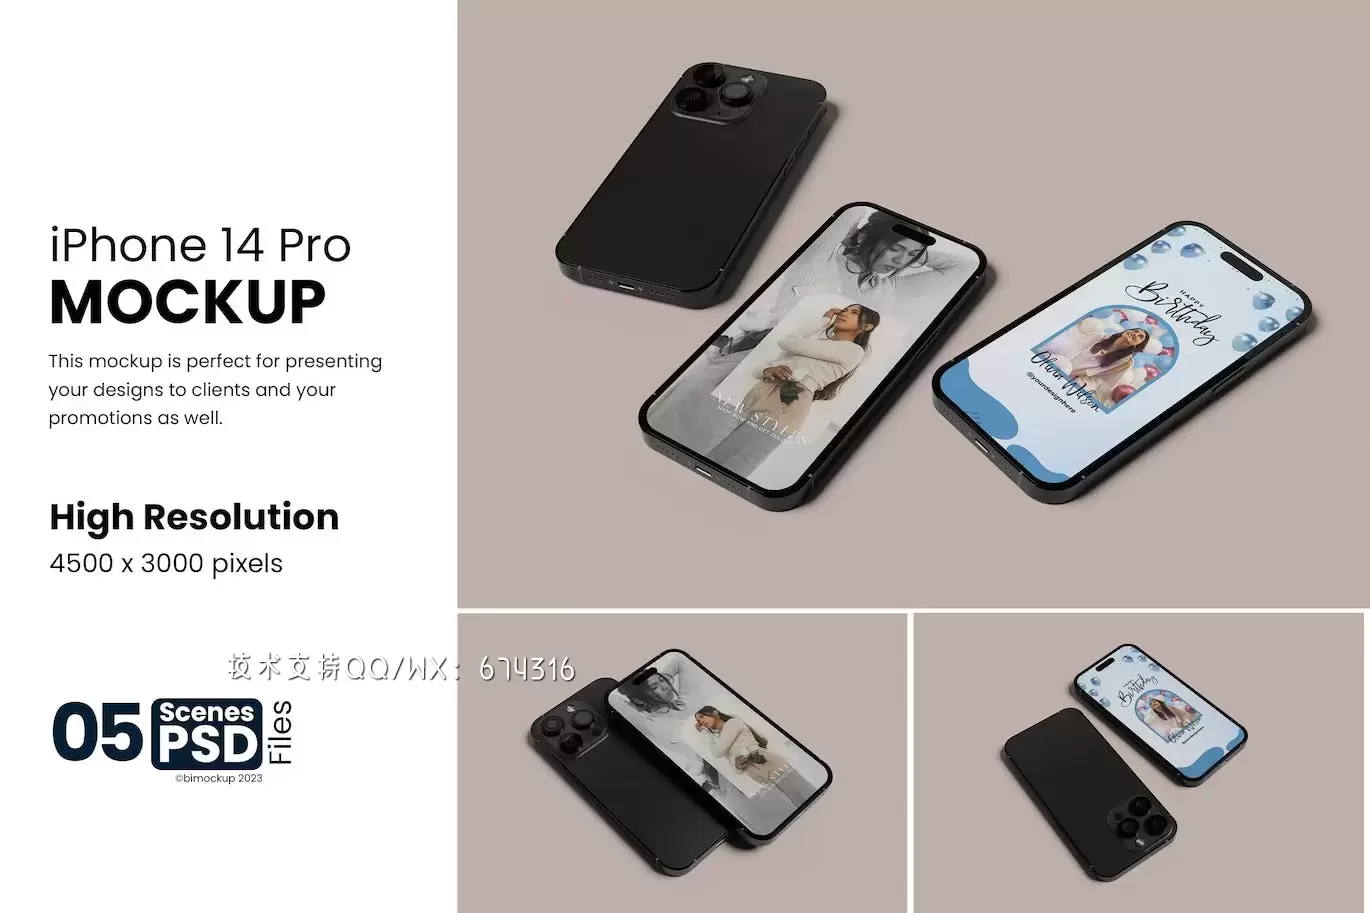 iPhone 14 Pro 组合手机样机 (PSD)免费下载